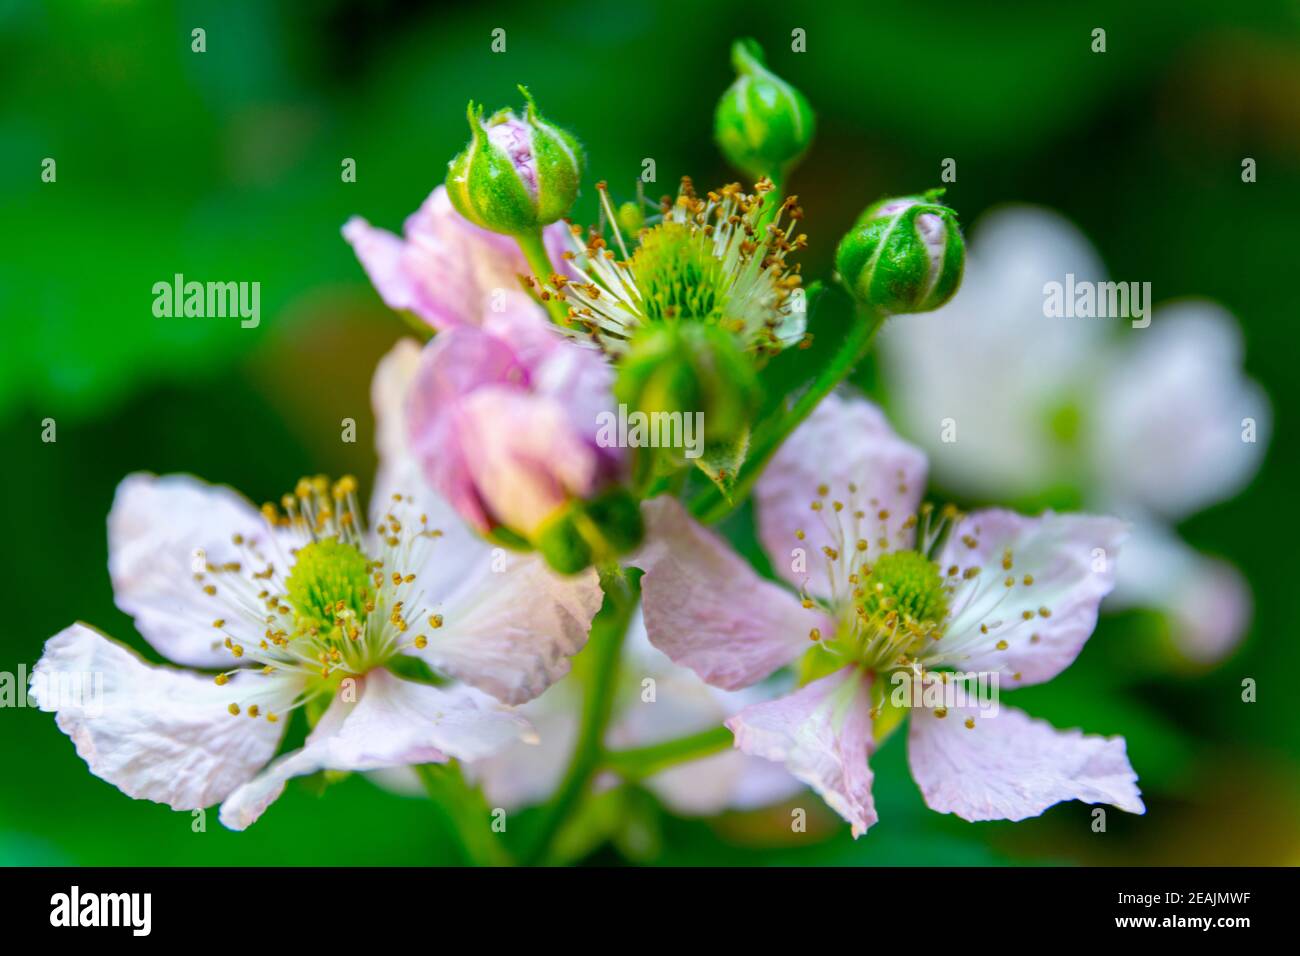 Framboise Blütenköpfe während der Sprintime. Makroaufnahme, Detailaufnahme und Nahaufnahme Stockfoto